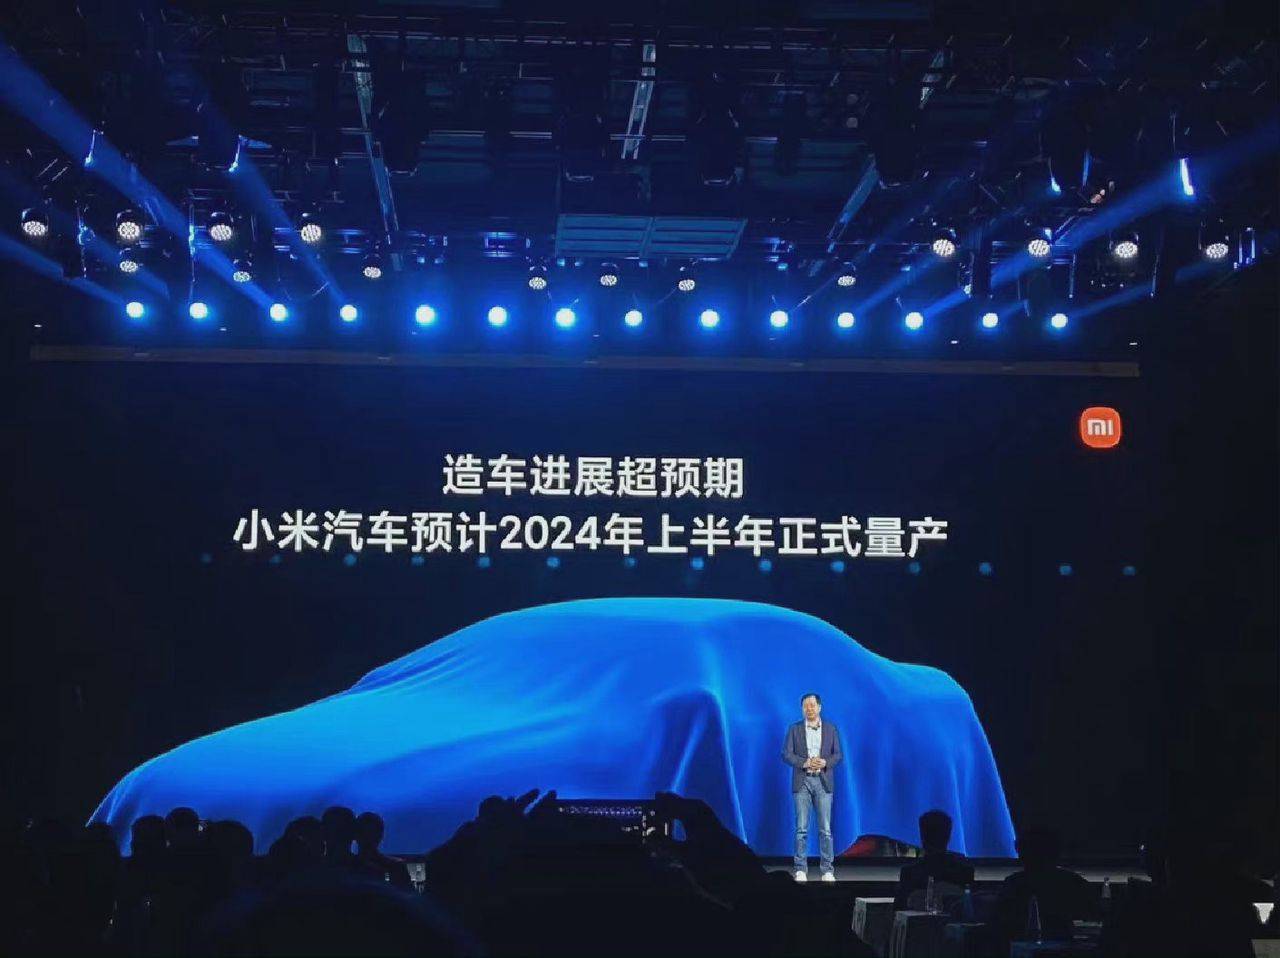 mi2 - Tesla richiama oltre 127.000 Model 3 / Mercedes-Benz rilascia avviso EQS SUV / Brevetto automobilistico Xiaomi approvato